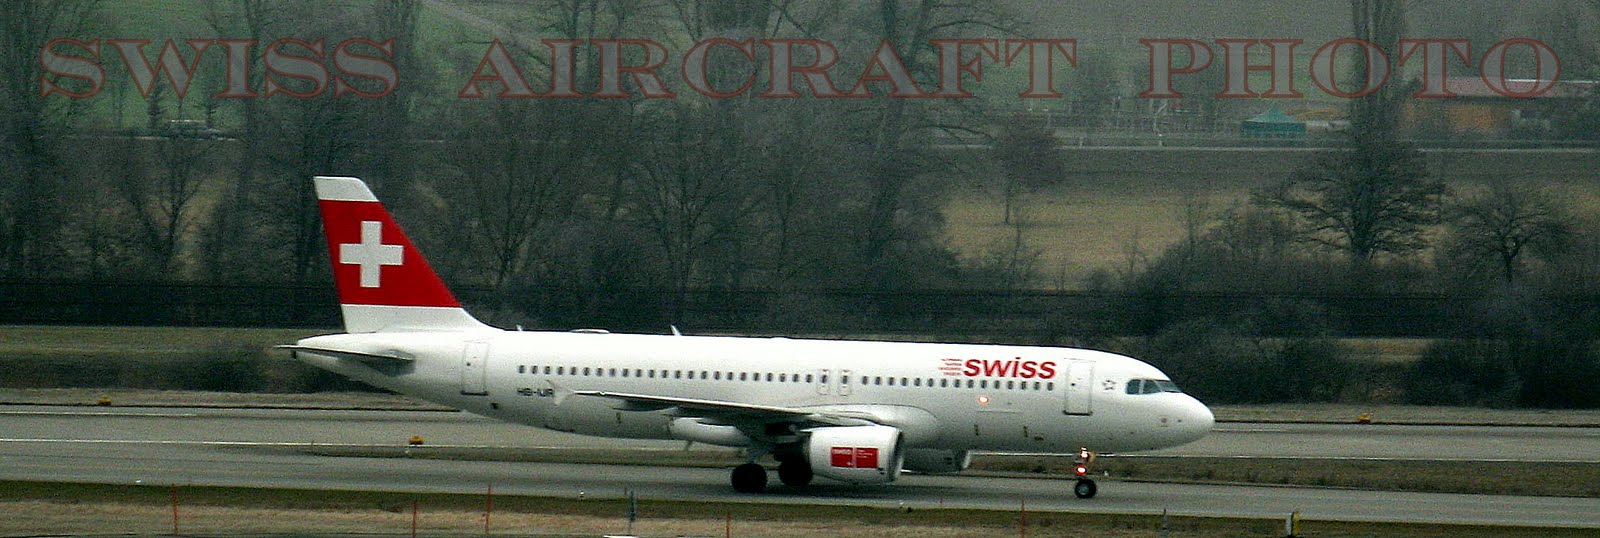 Swiss Aircraft Photos